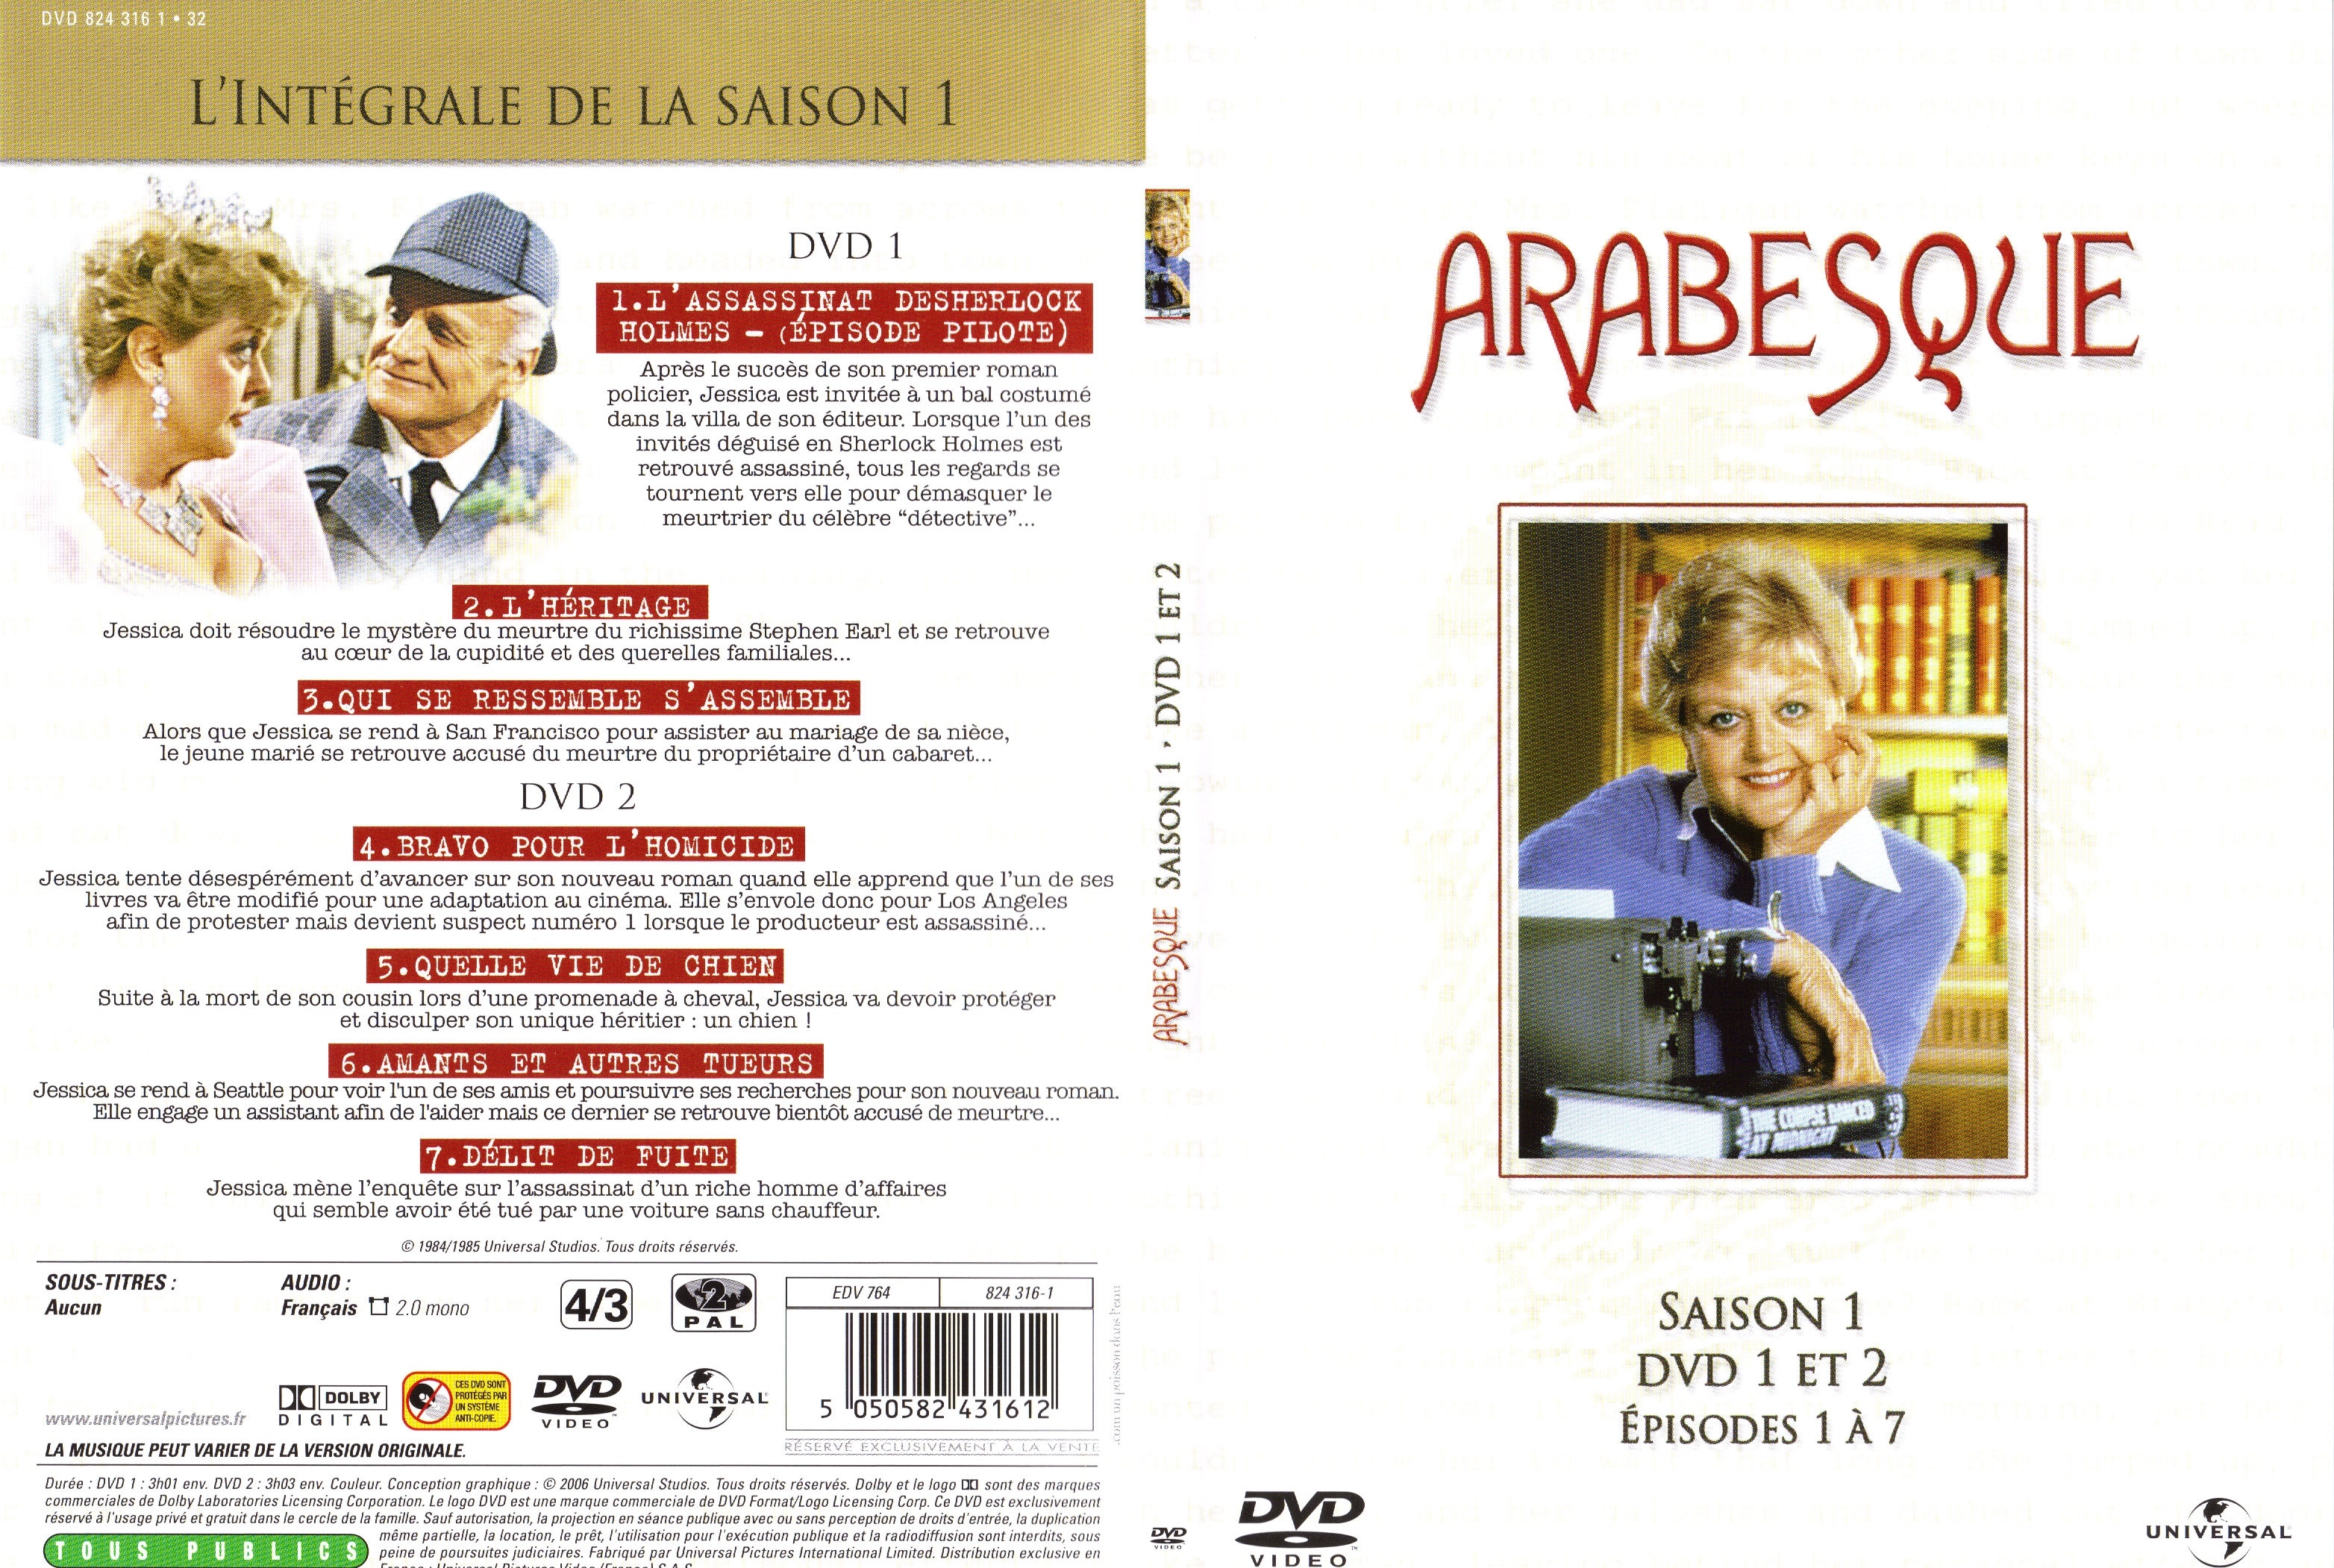 Jaquette DVD Arabesque Saison 1 DVD 1 et 2